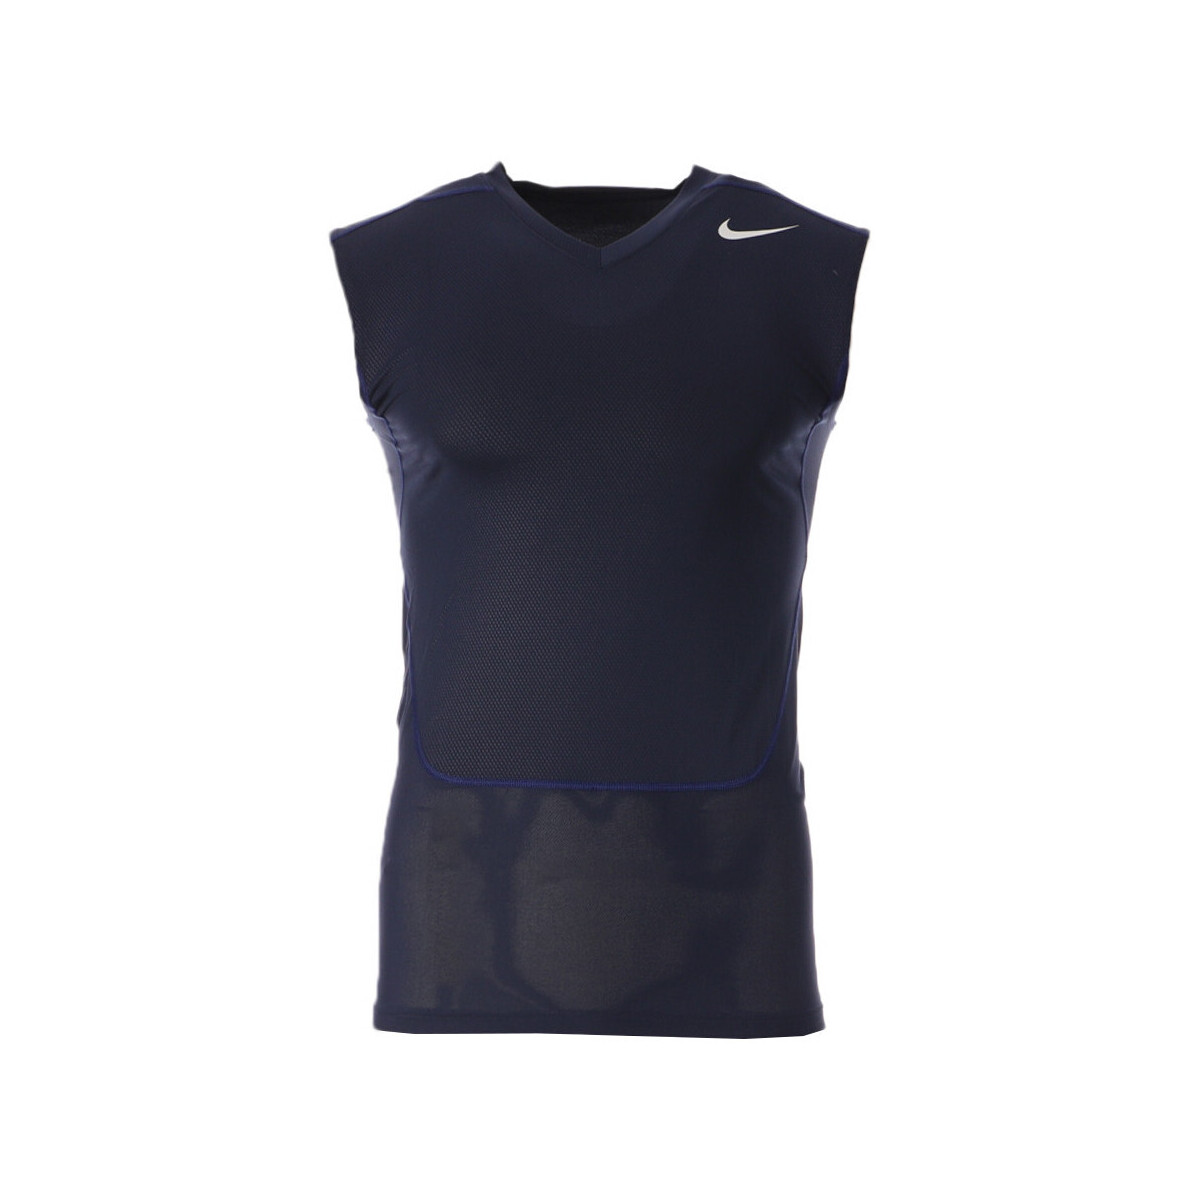 Textiel Heren Mouwloze tops Nike  Blauw